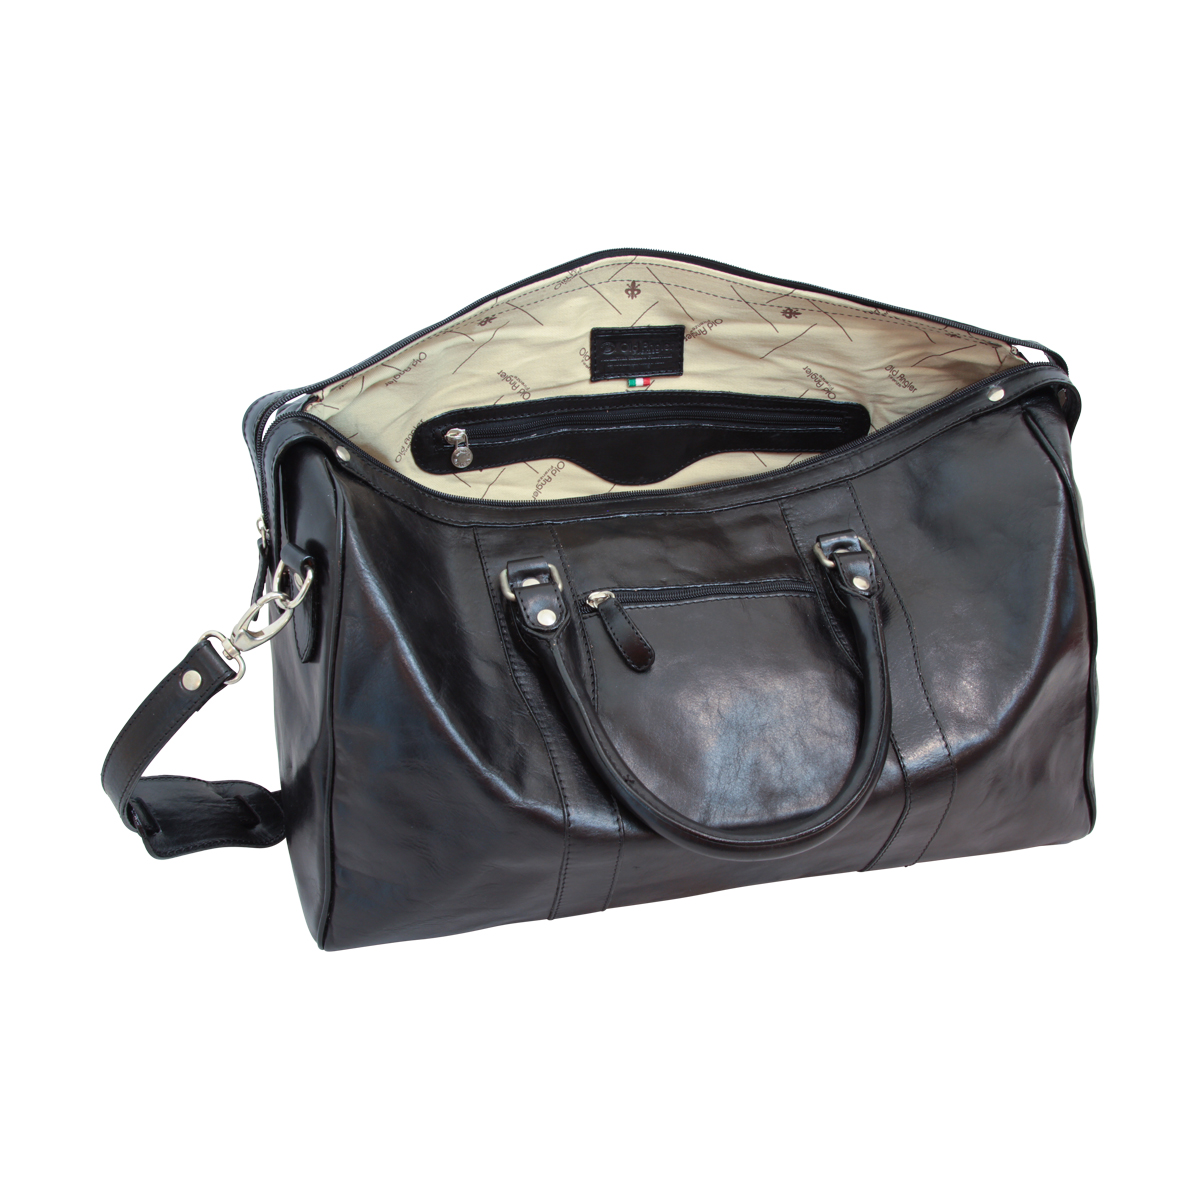 Travel Bag with shoulder strap | 108889NE US | Old Angler Firenze